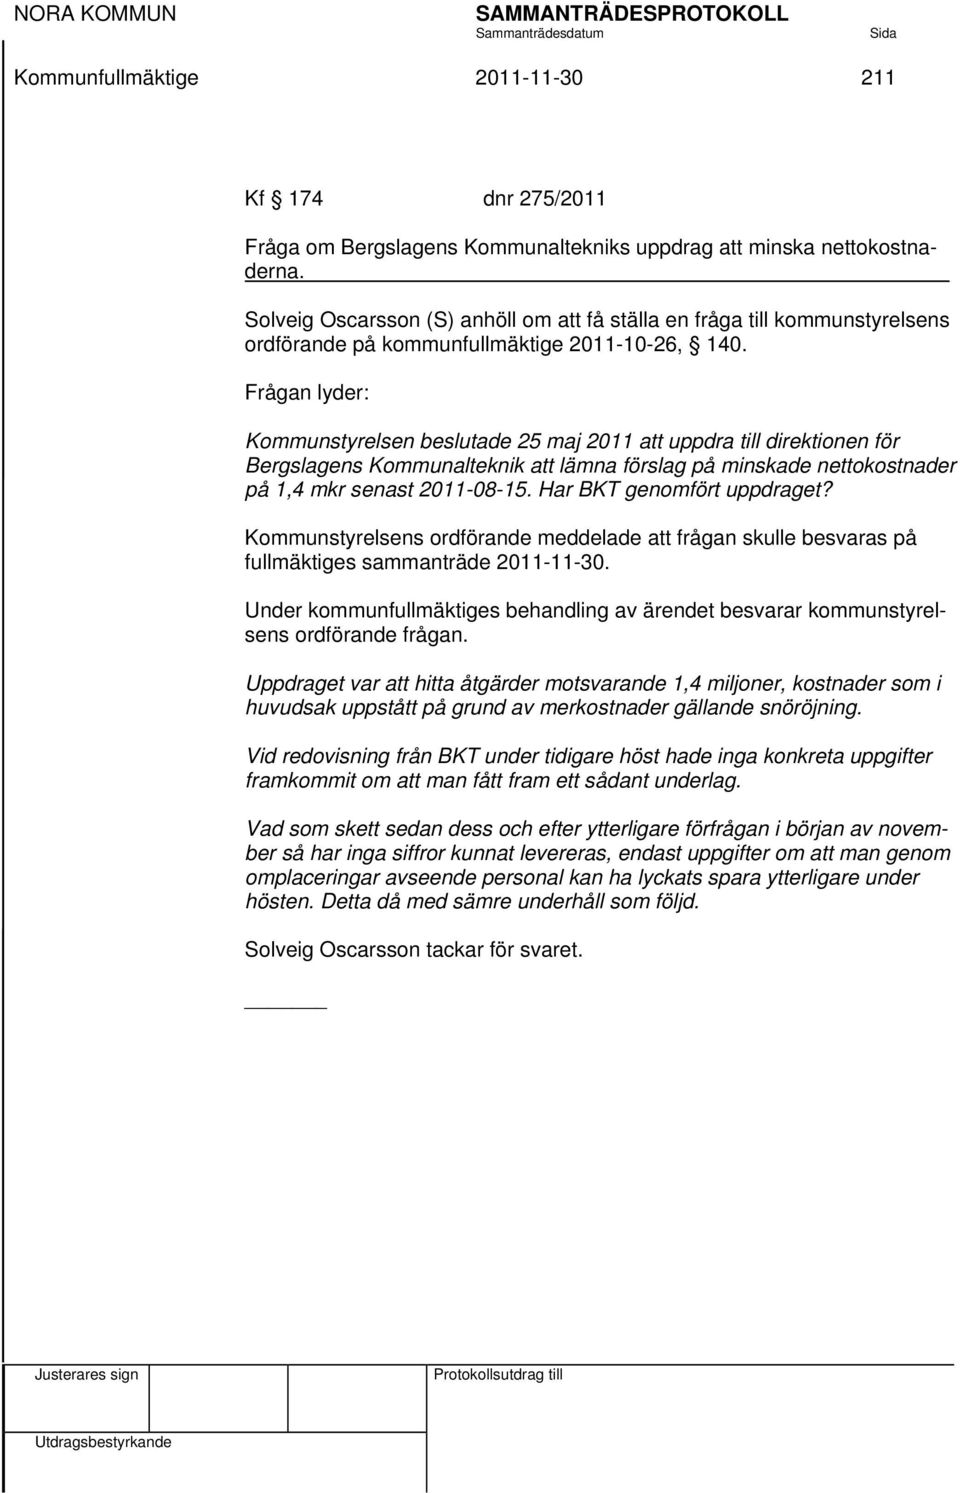 Frågan lyder: Kommunstyrelsen beslutade 25 maj 2011 att uppdra till direktionen för Bergslagens Kommunalteknik att lämna förslag på minskade nettokostnader på 1,4 mkr senast 2011-08-15.